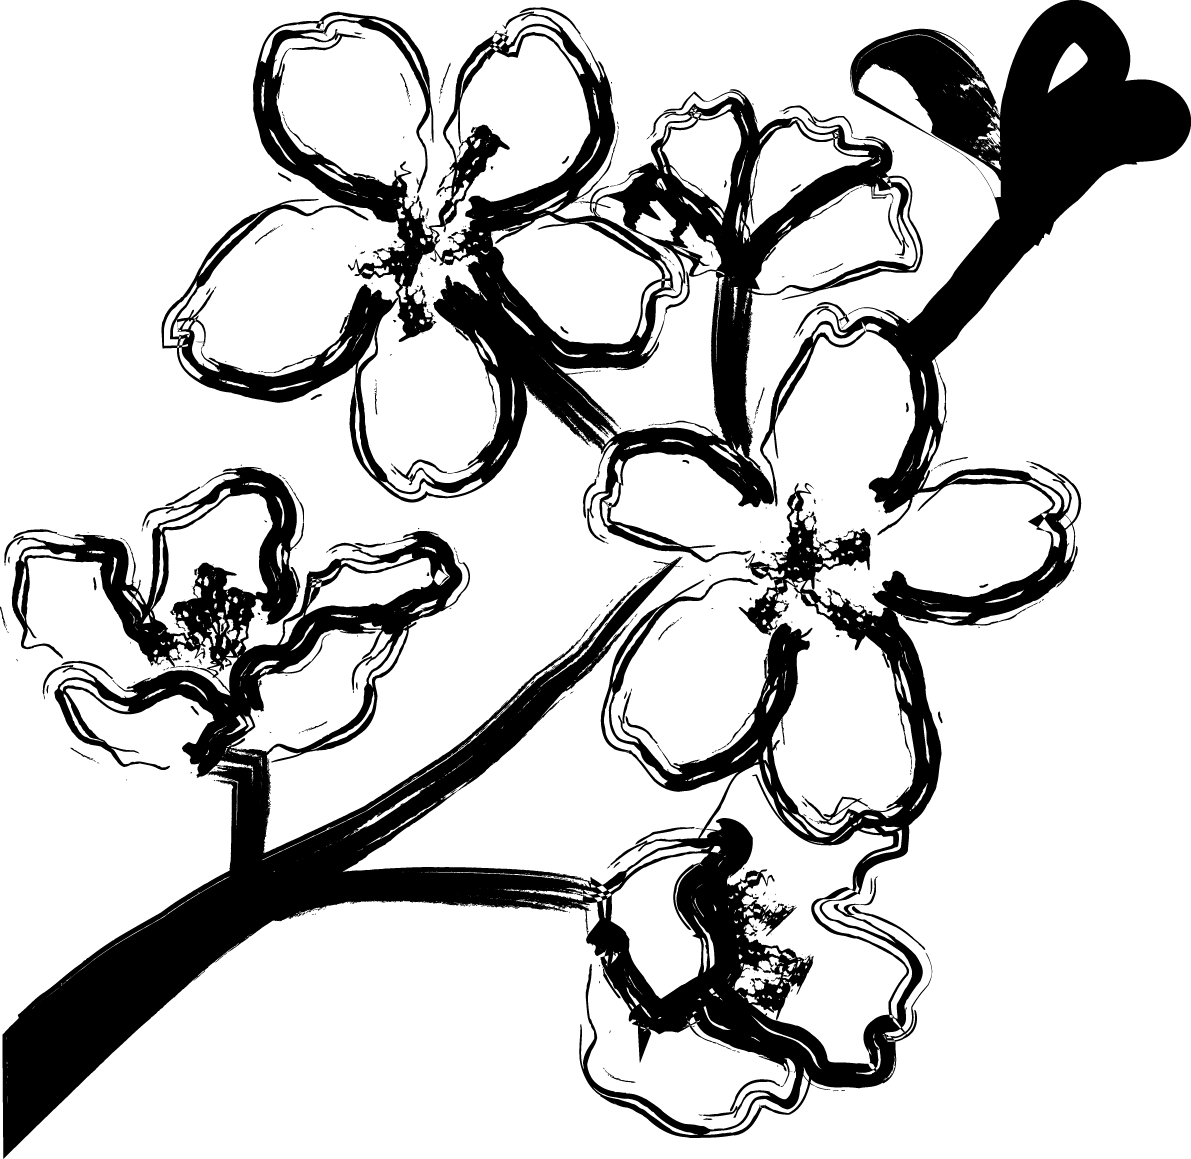 白黒の桜和風イラスト おしゃれ 筆描き風の枝と花びら イラスト素材 超多くの無料かわいいイラスト素材